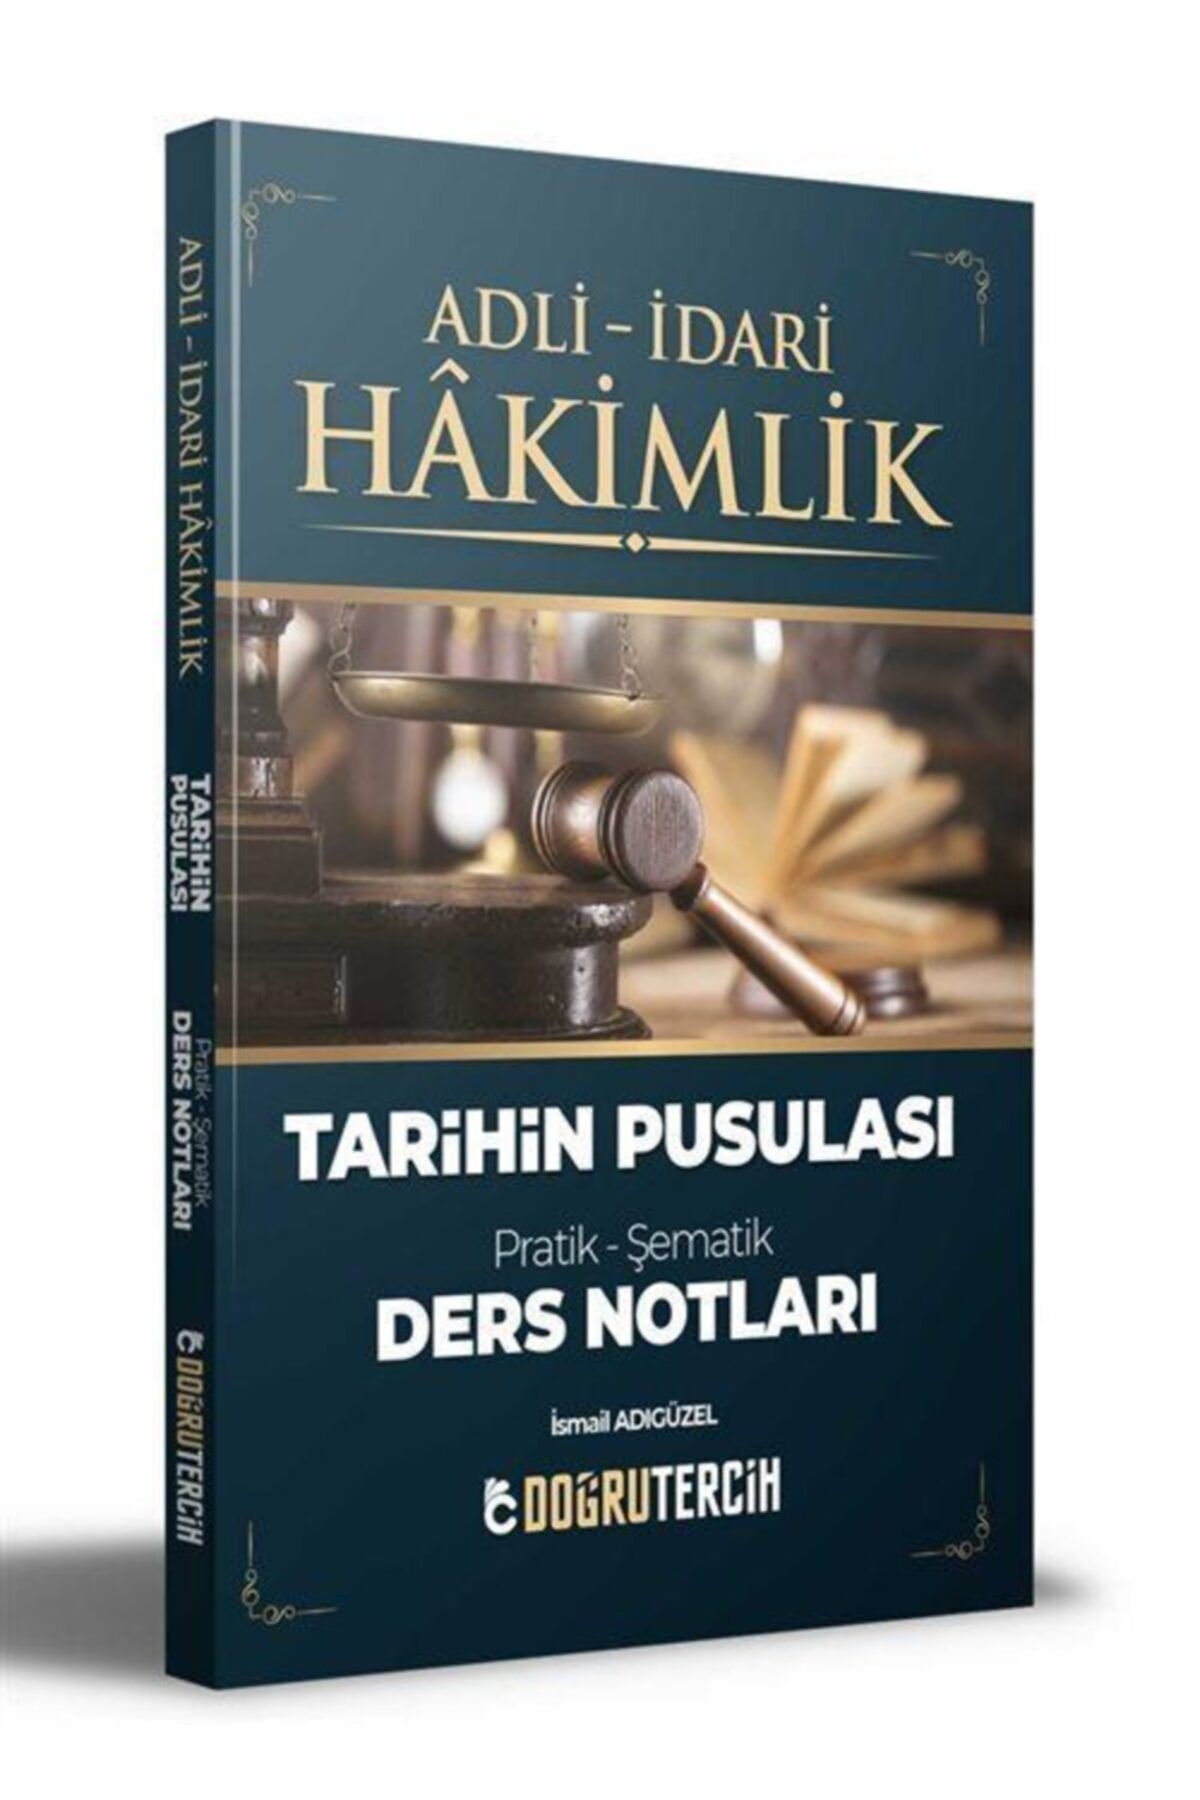 Doğru Tercih Yayınları Adli Idari Hakimlik Tarihin Pusulası Ders Notları